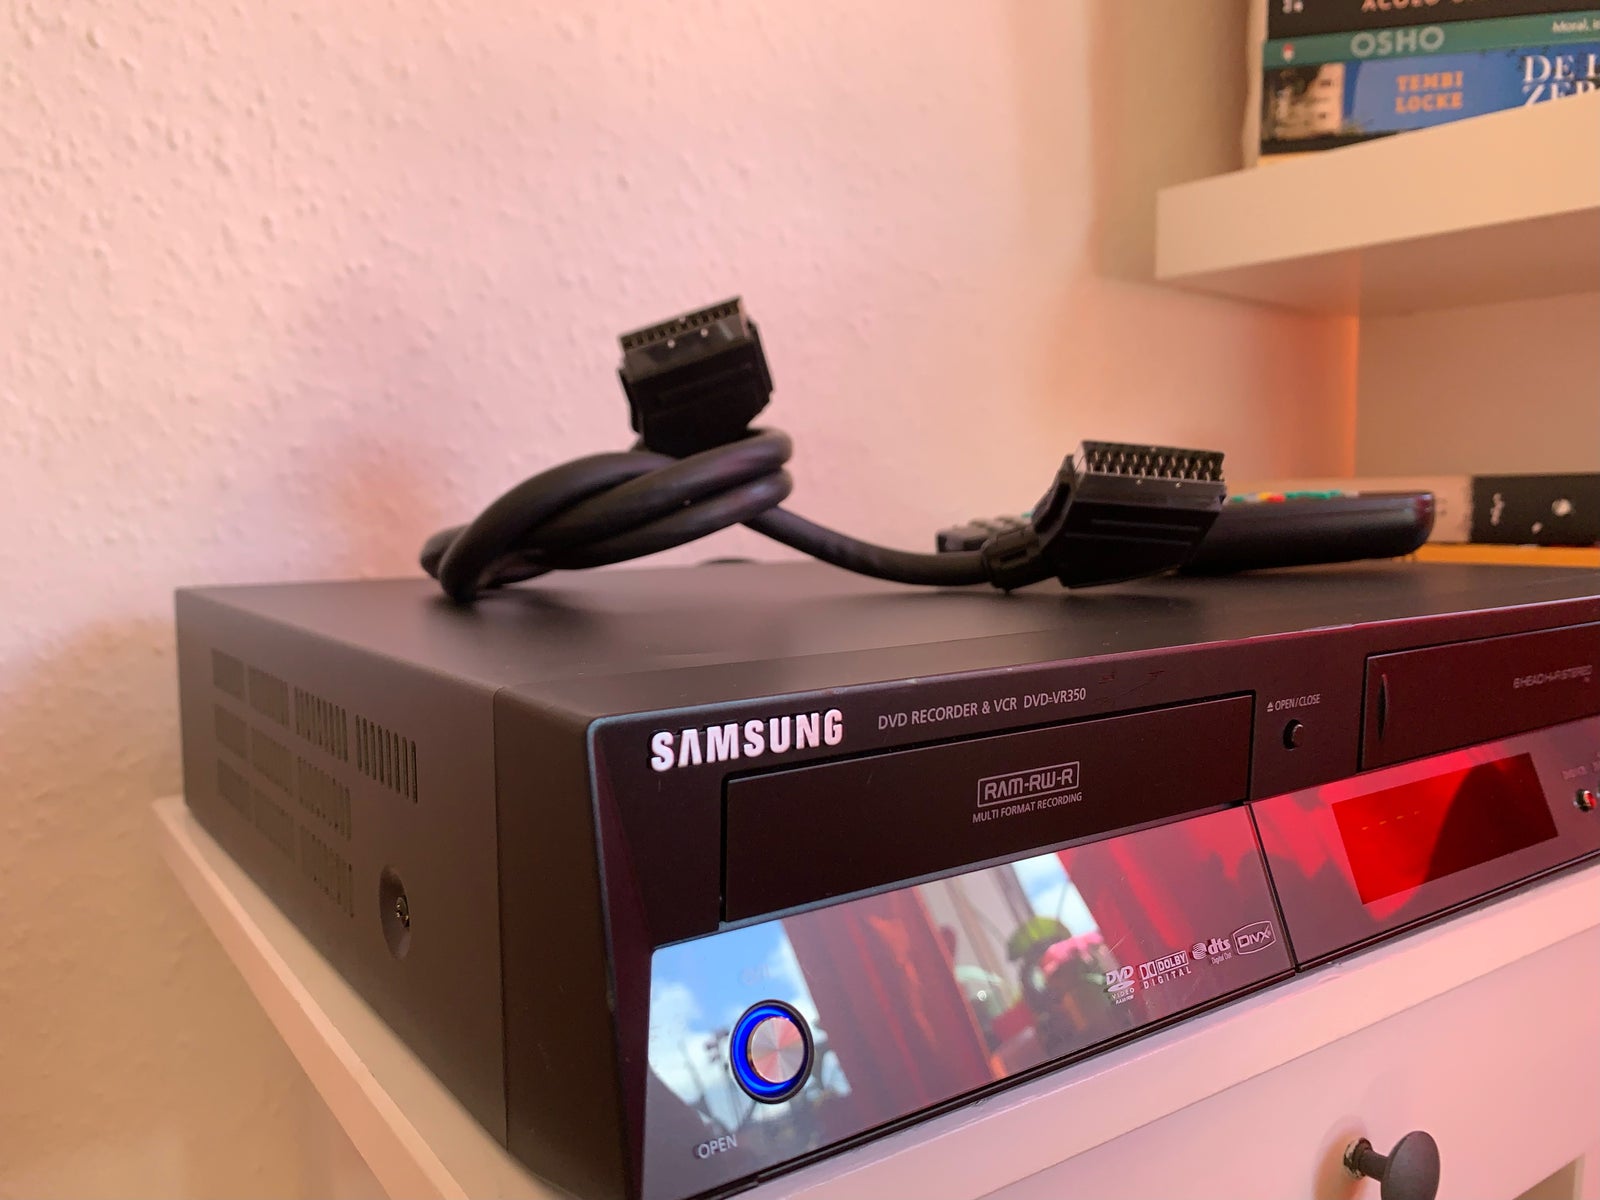 Samsung, DVD-VR350, Dvd-optager